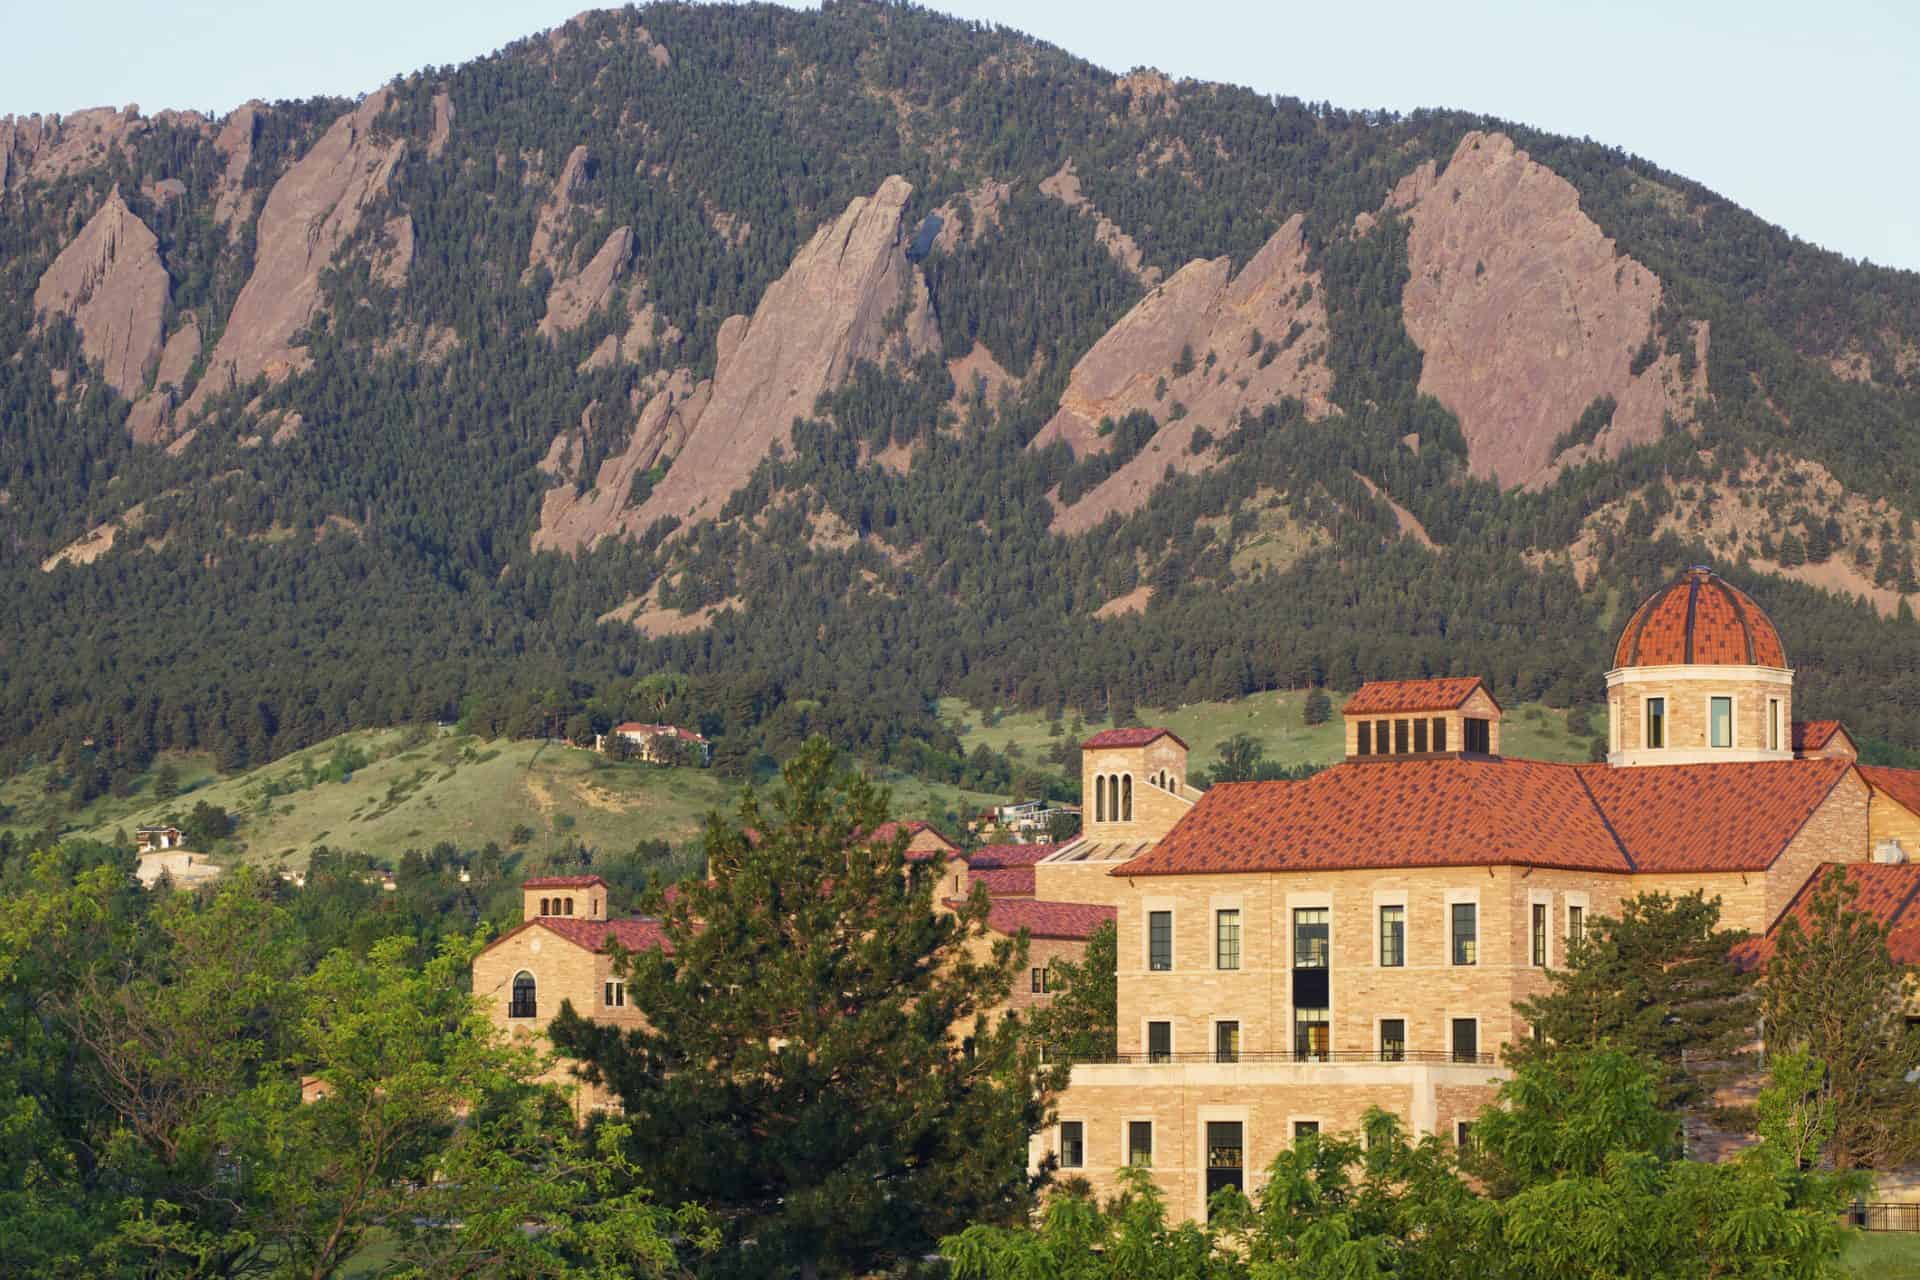 University of Colorado campus in Boulder Colorado